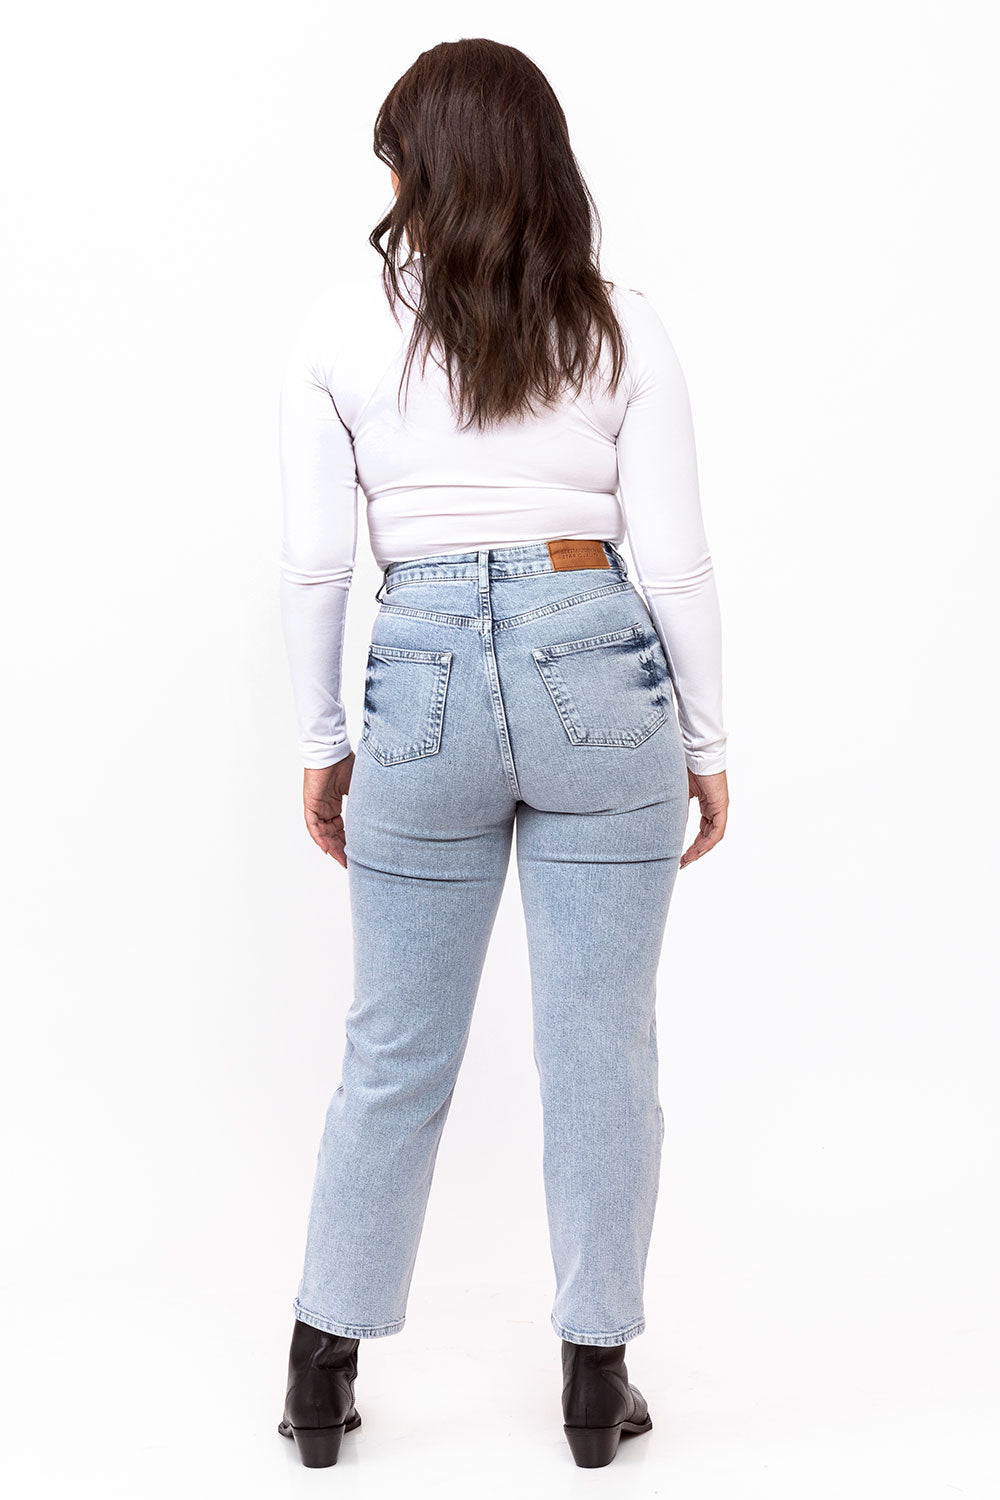 ג'ינס לנשים גזרת קרסול דגם Ankle Light Blue Denim מידה לארג'